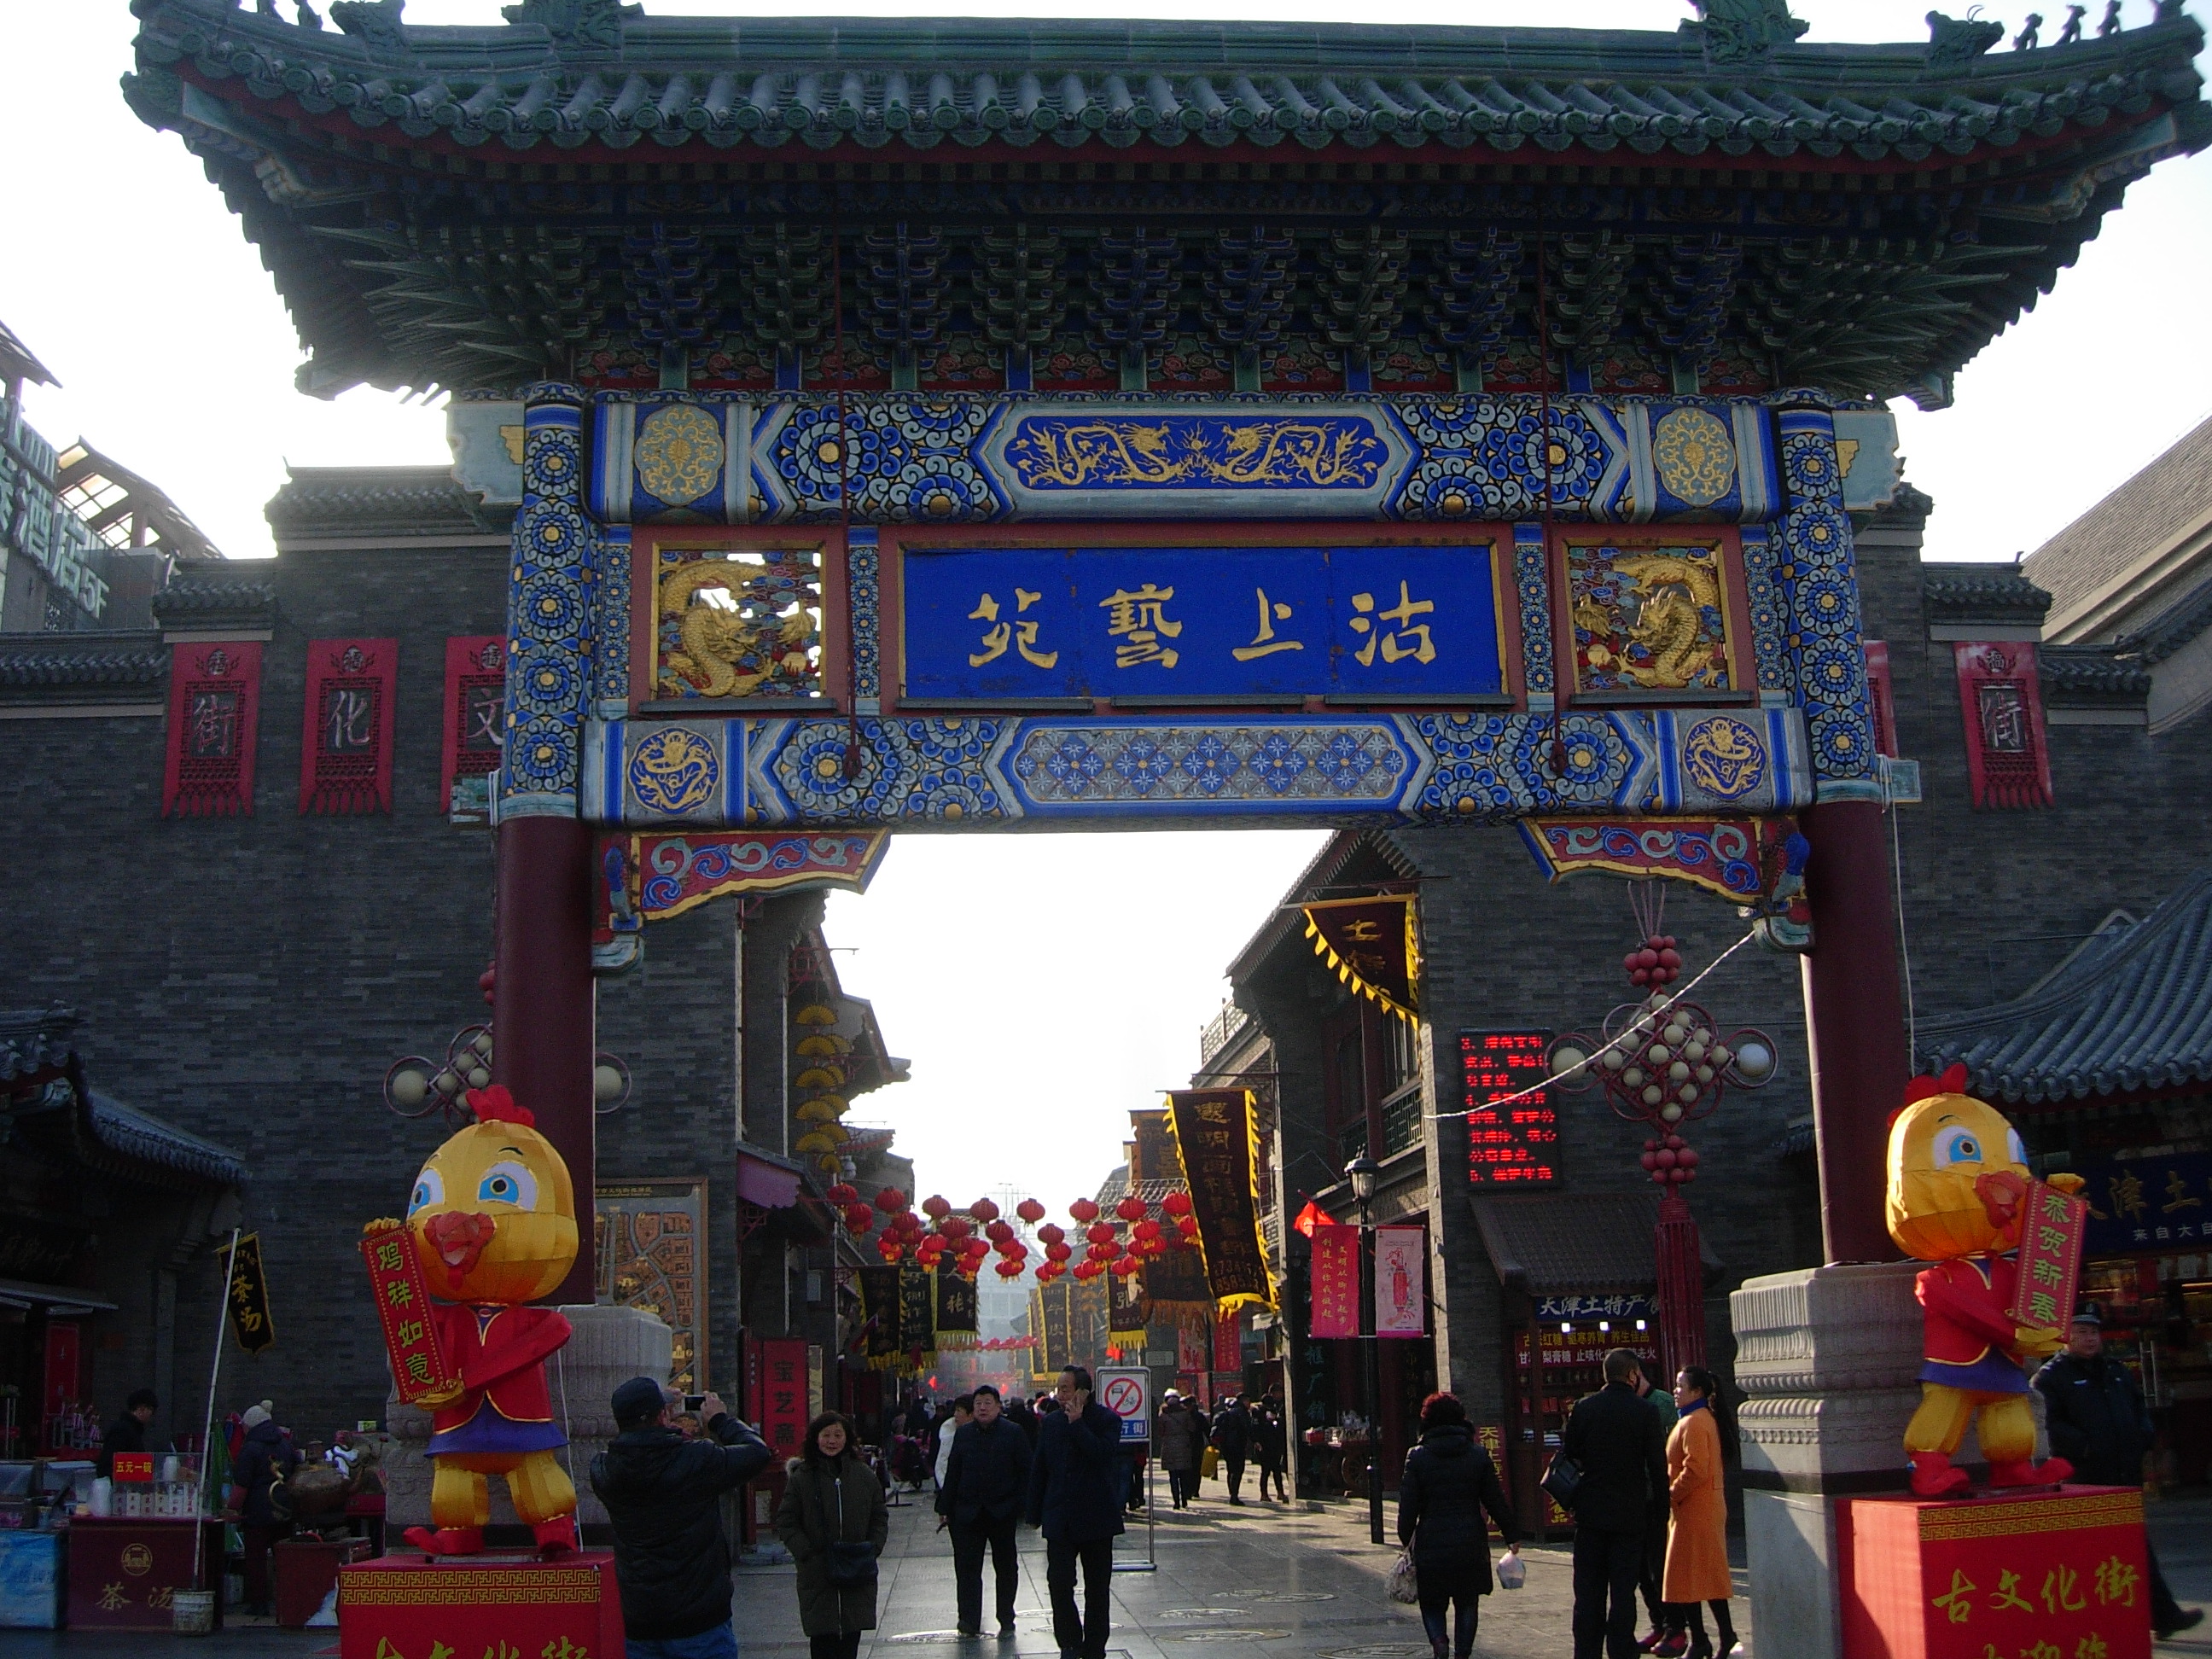 古文化街位于天津市南开区海河边上,就是一条仿清代民间店铺组成的